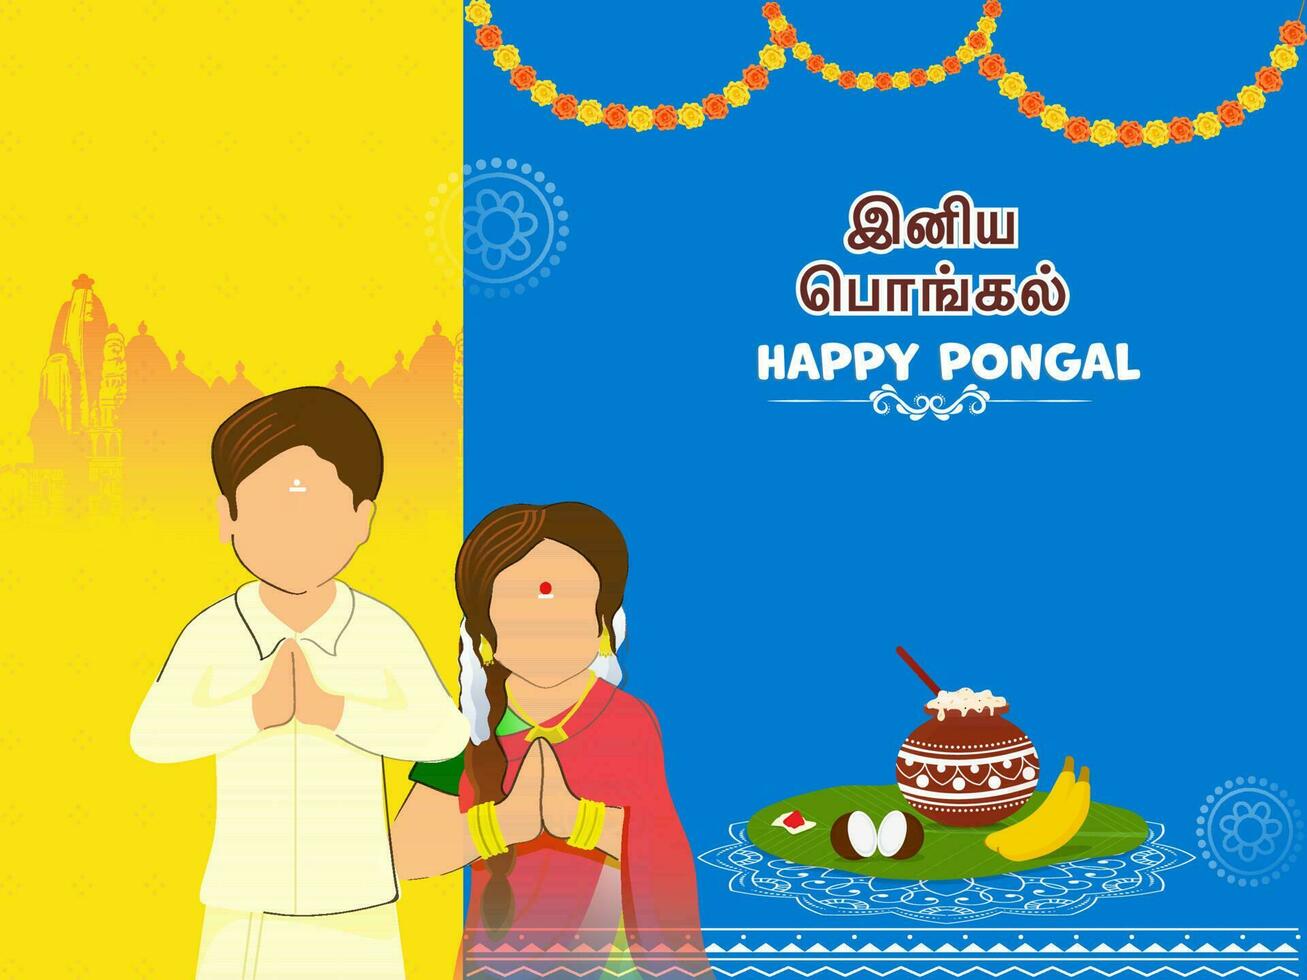 tamil belettering van gelukkig pongal met gezichtsloos zuiden Indisch paar geven groetjes, traditioneel schotel in modder pot, tempel Aan geel en blauw achtergrond. vector